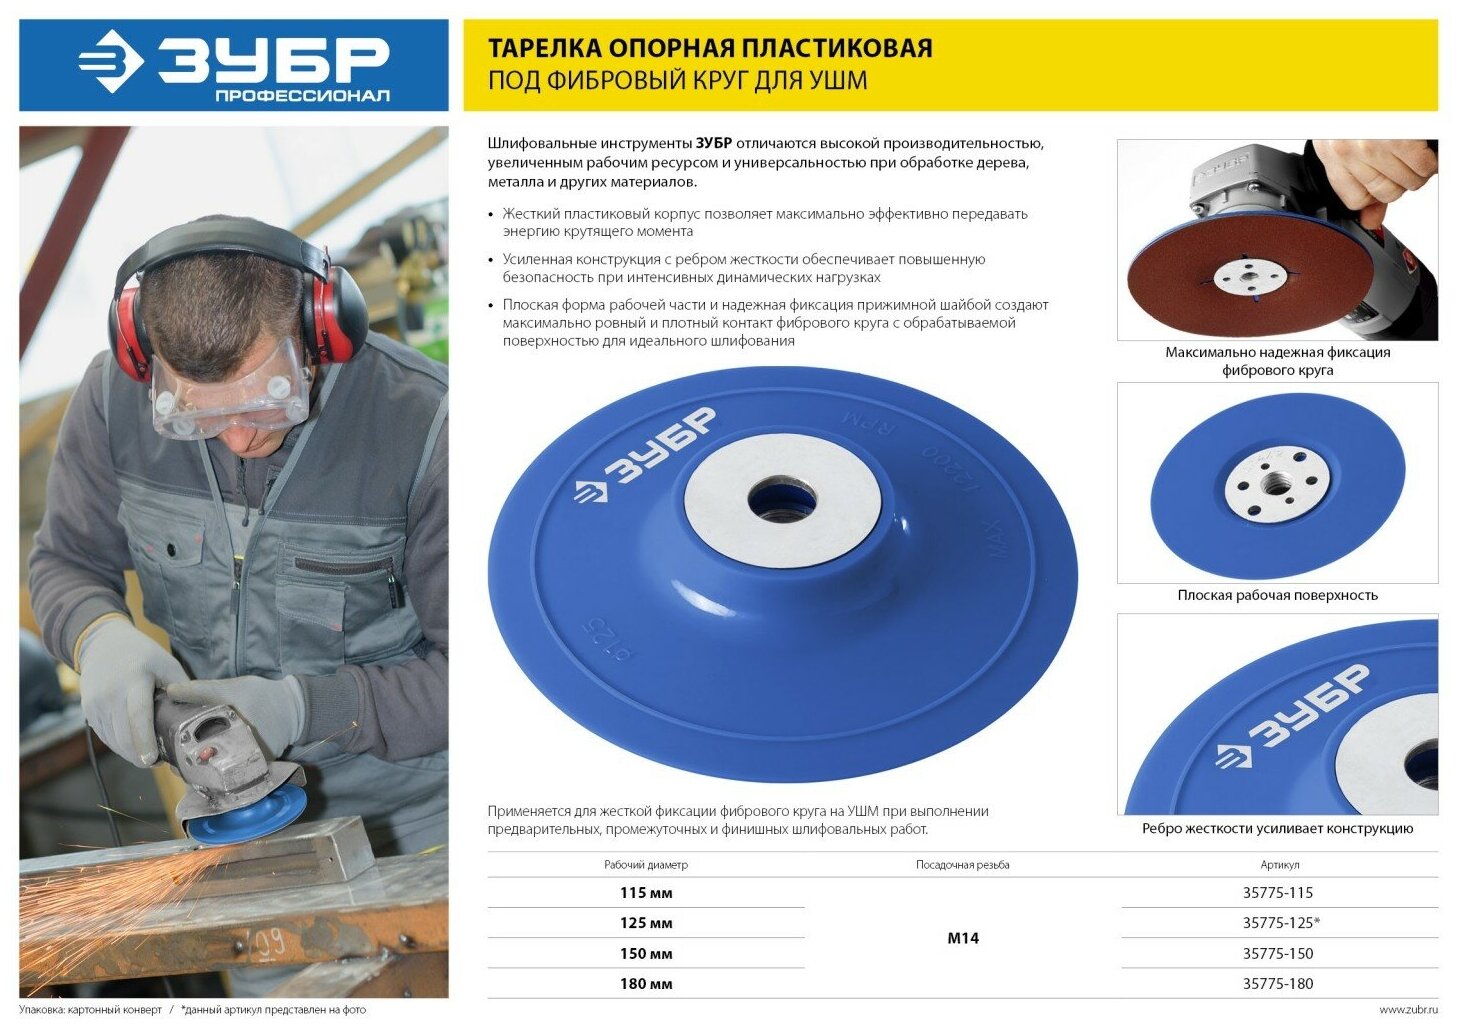 ЗУБР М14, d 180 мм, пластиковая, опорная тарелка для УШМ под круг фибровый, Профессионал (35775-180)